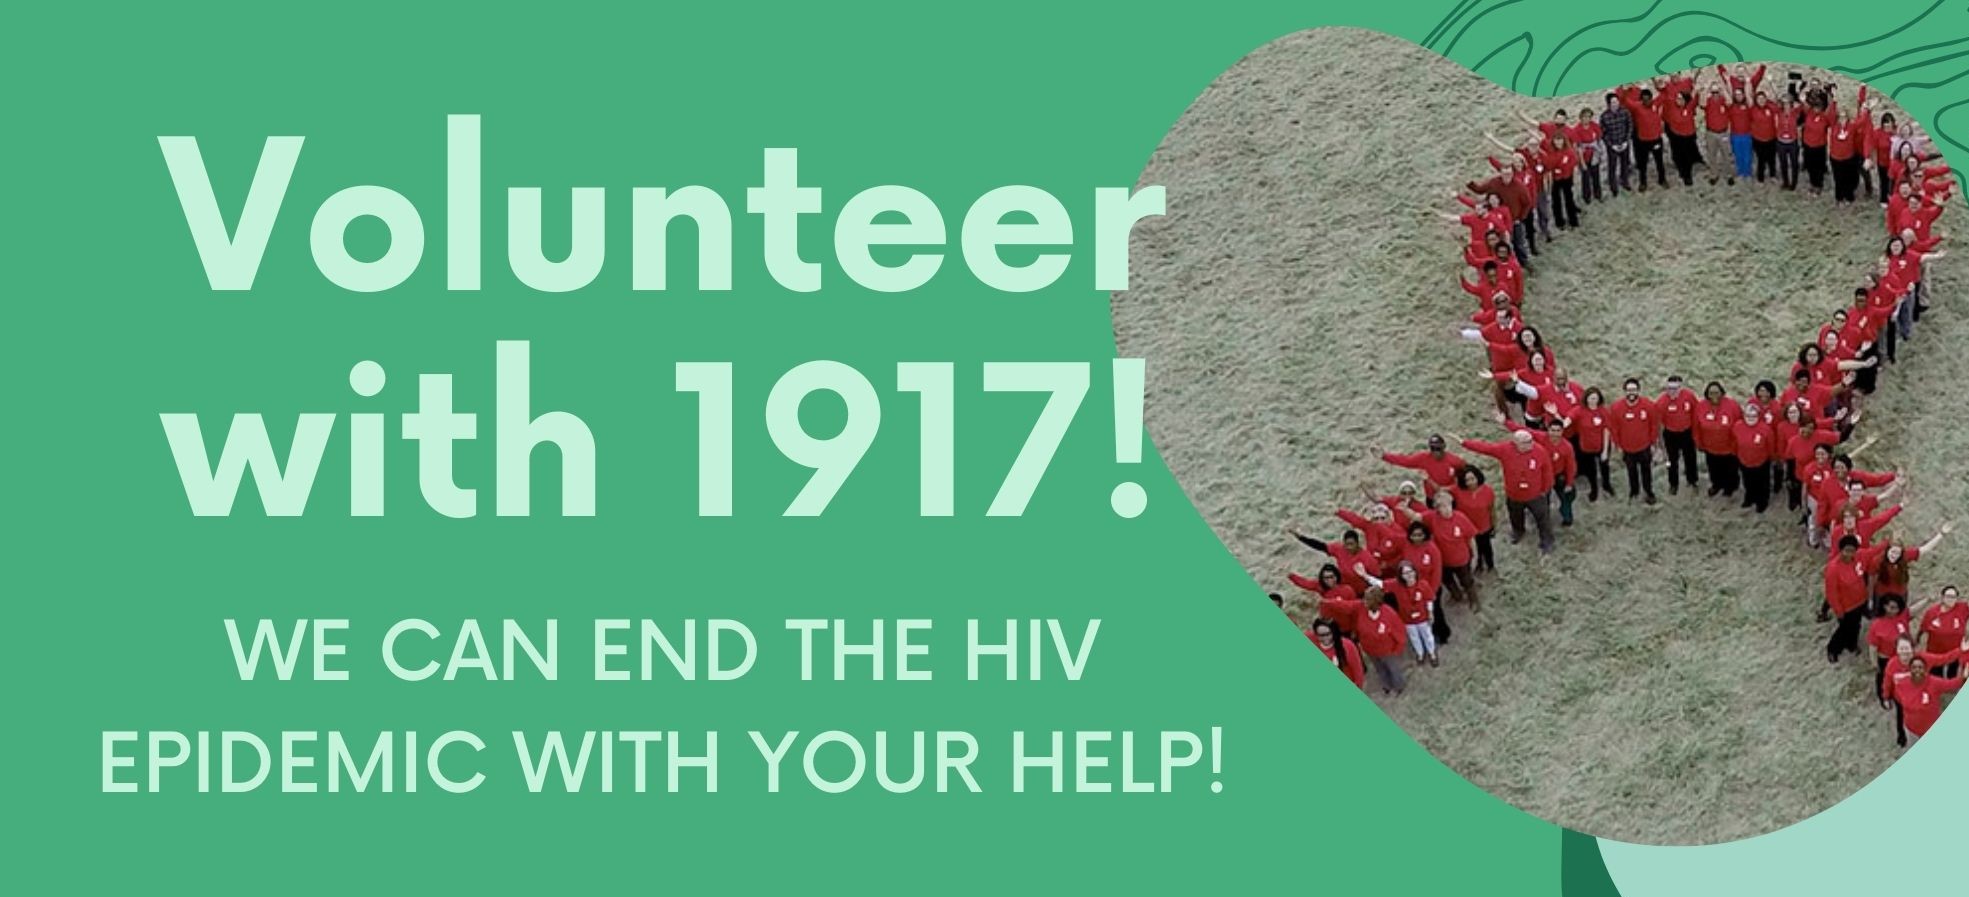 Volunteer with 1917 recruitment flier image no website